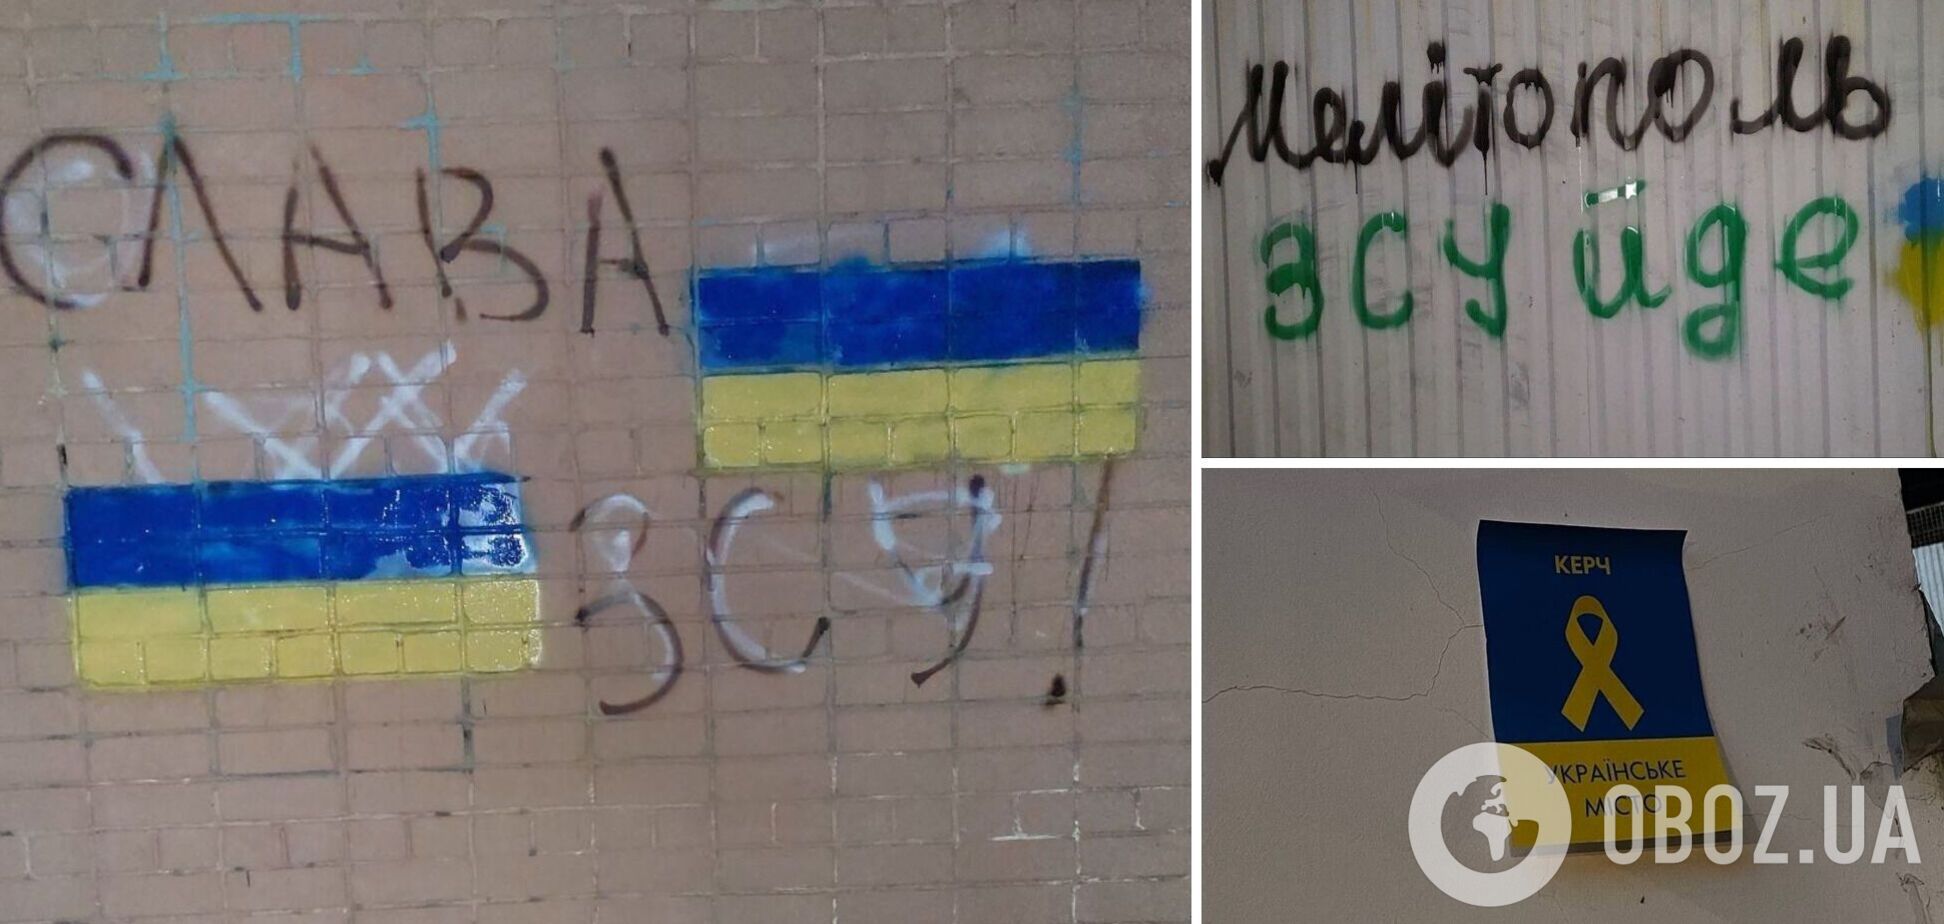 'Мы должны быть вместе': украинские патриоты устроили смелые акции на оккупированных территориях и призвали поддержать их. Фото